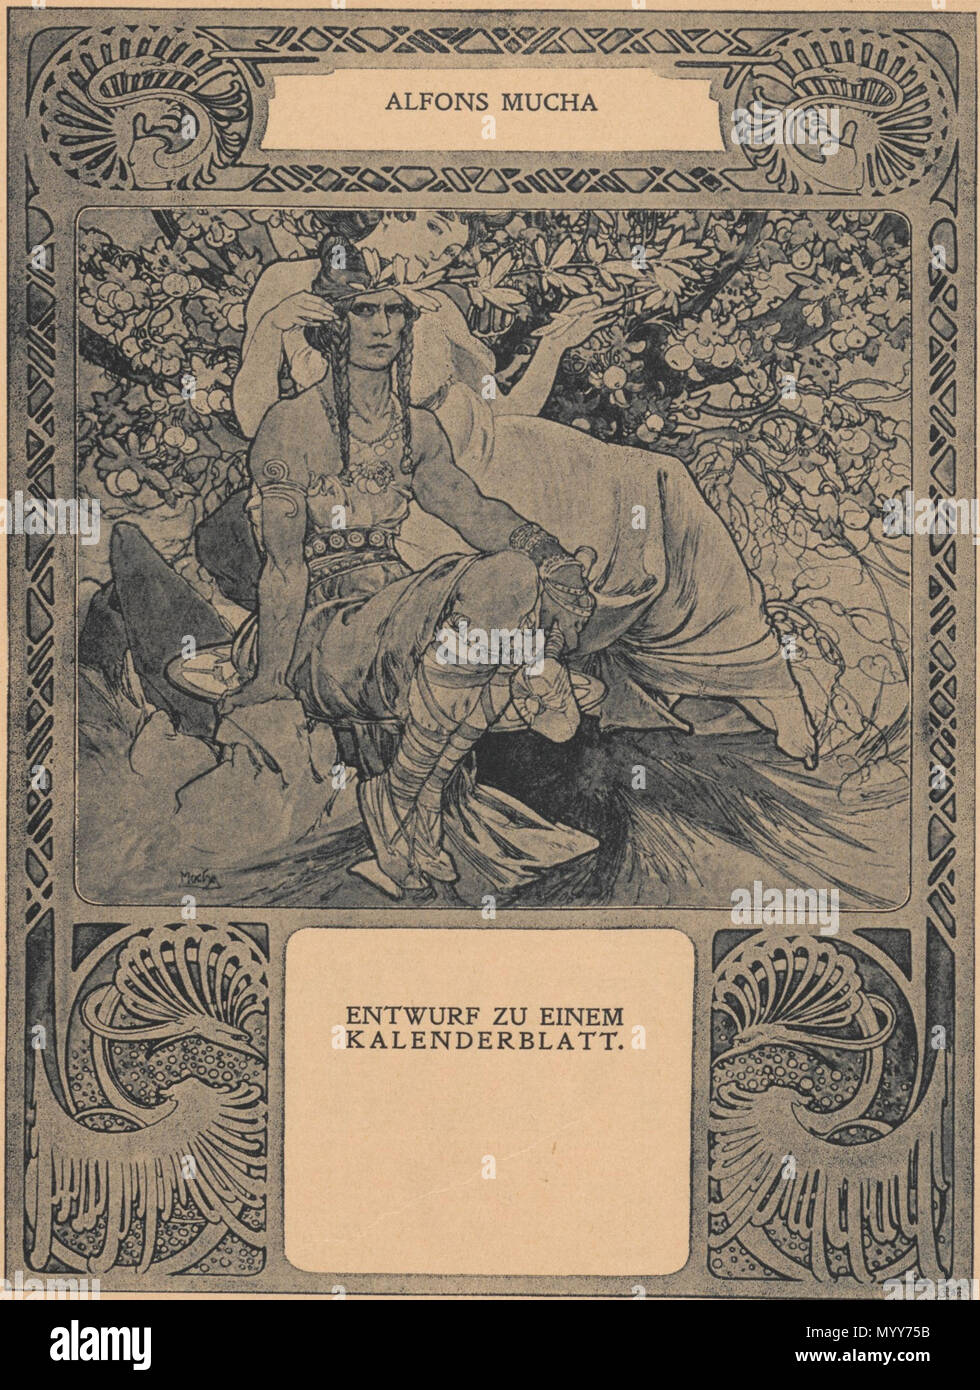 Englisch Für Einen Kalender Skizze 1898 Alfons Mucha 72 Mucha